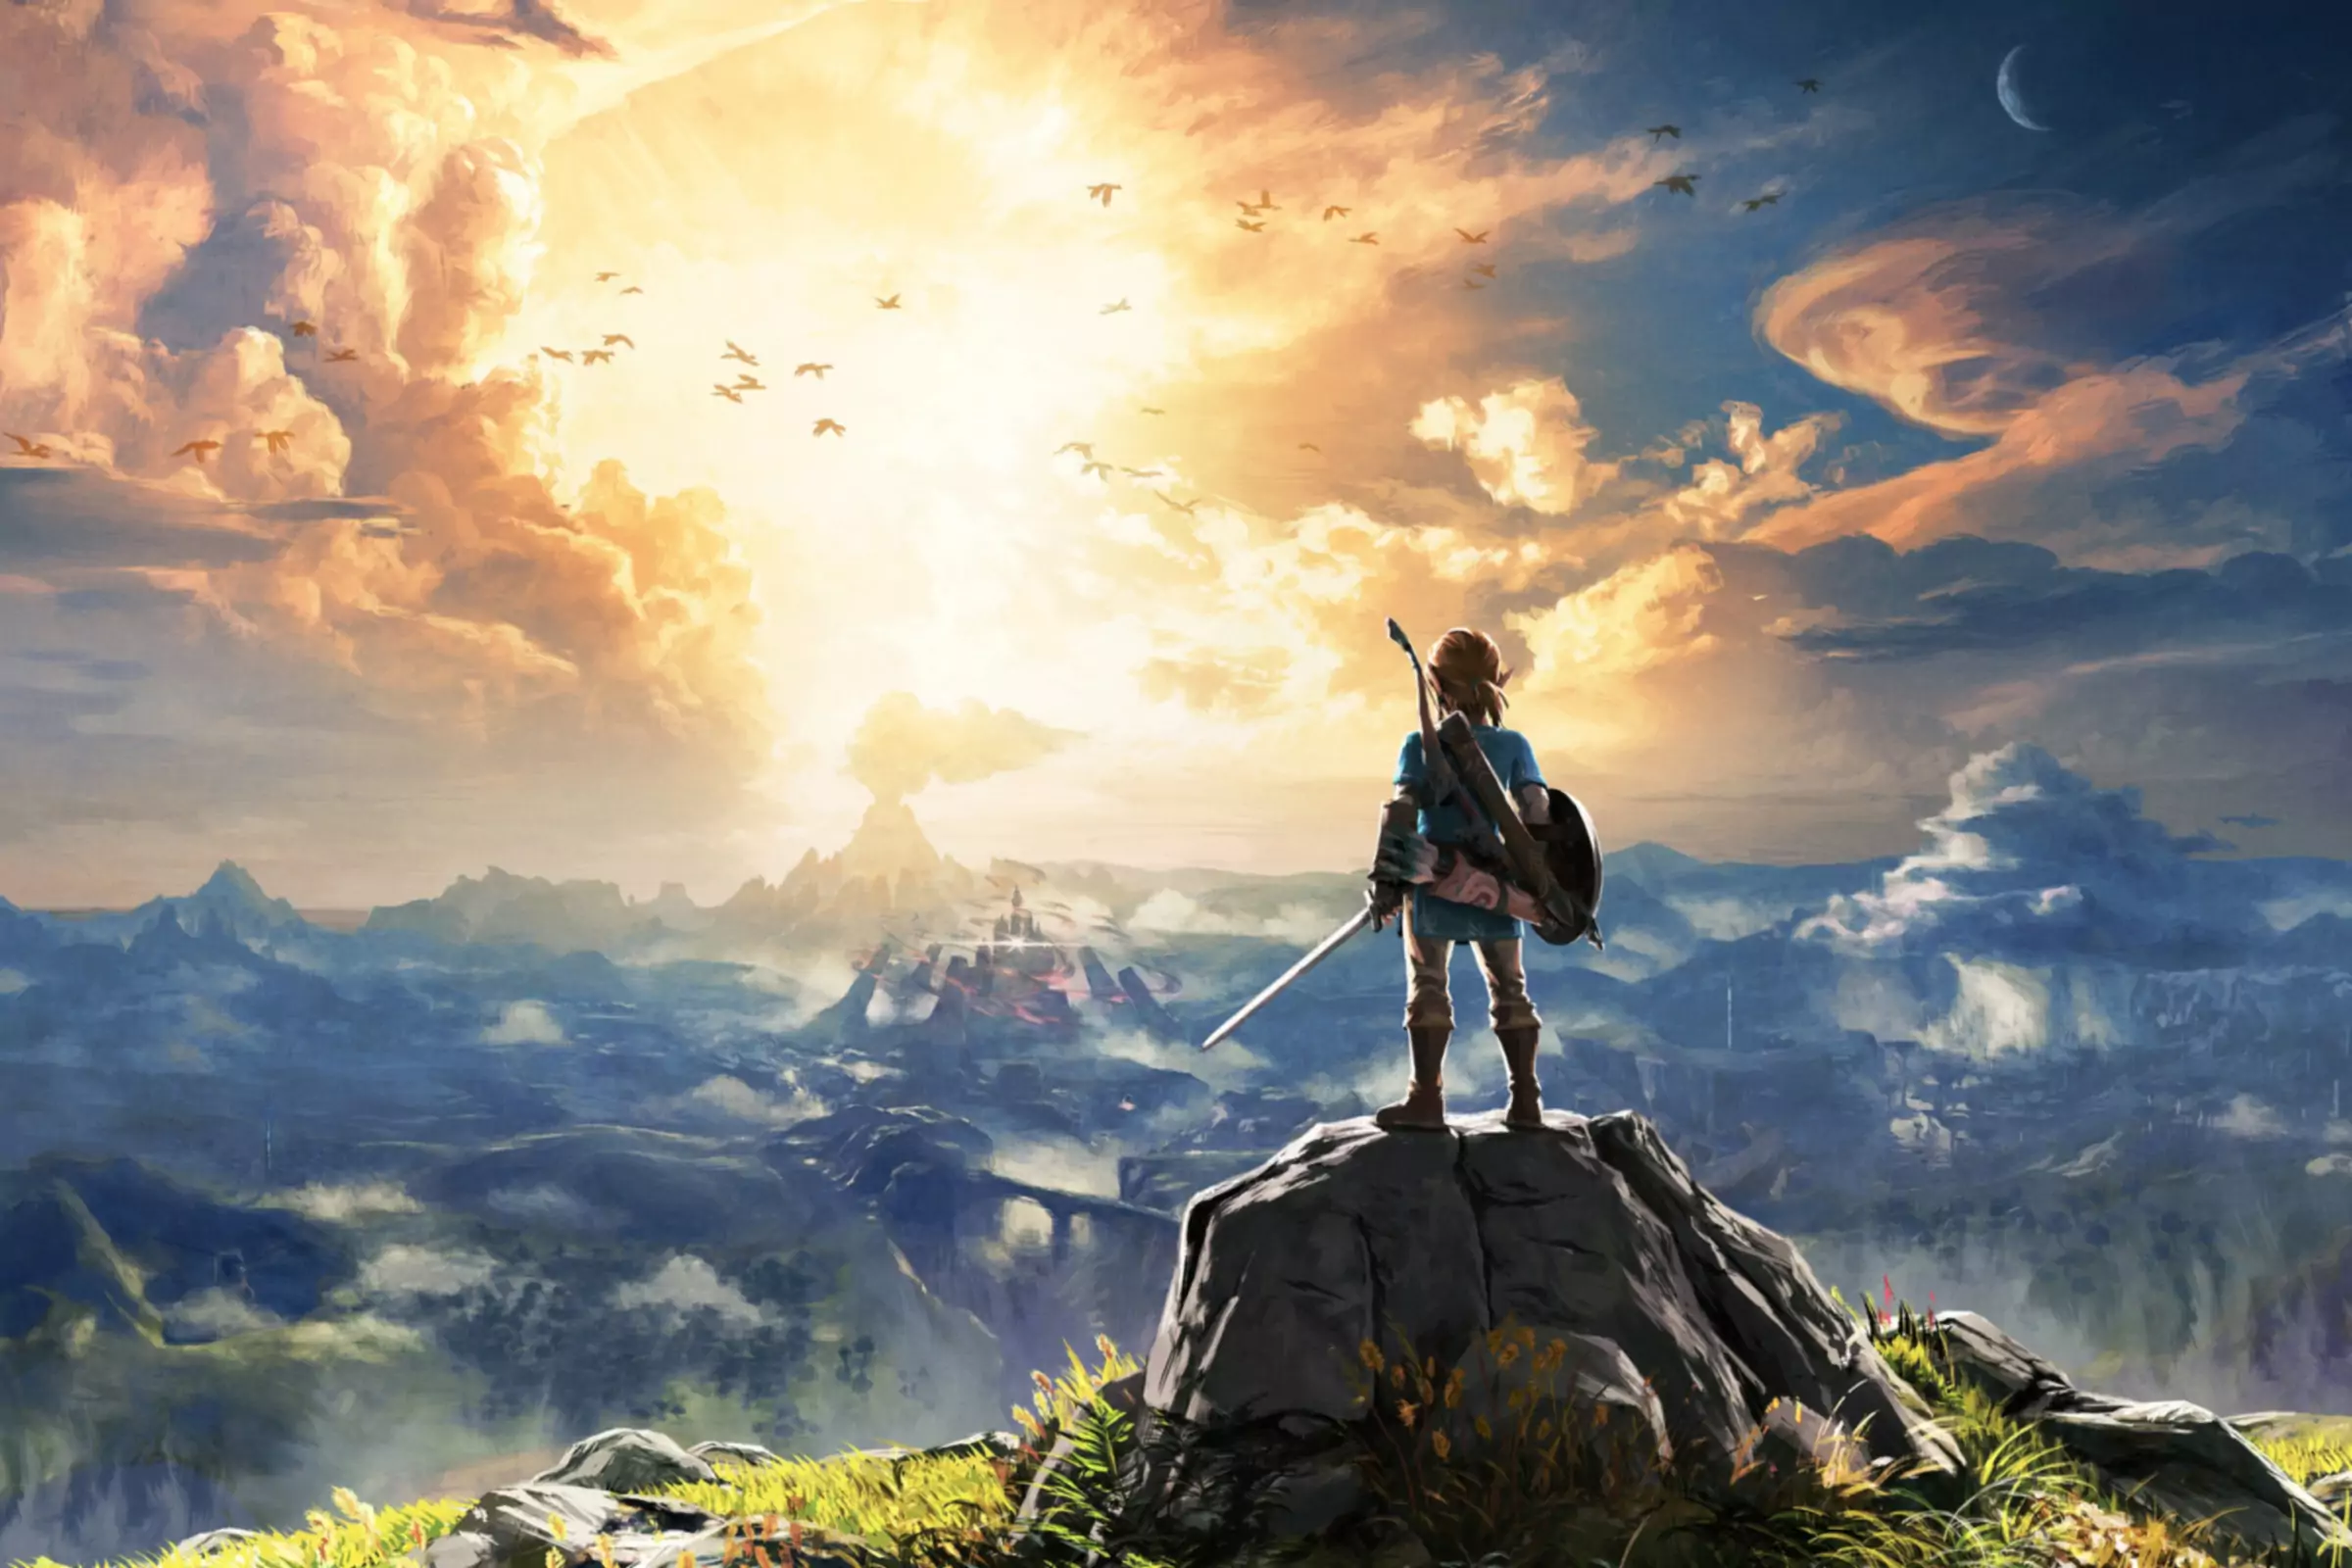 Illustration peinte de The Legend of Zelda Breath of the Wild représentant un personnage se tenant au sommet d'un rocher surplombant une vaste...